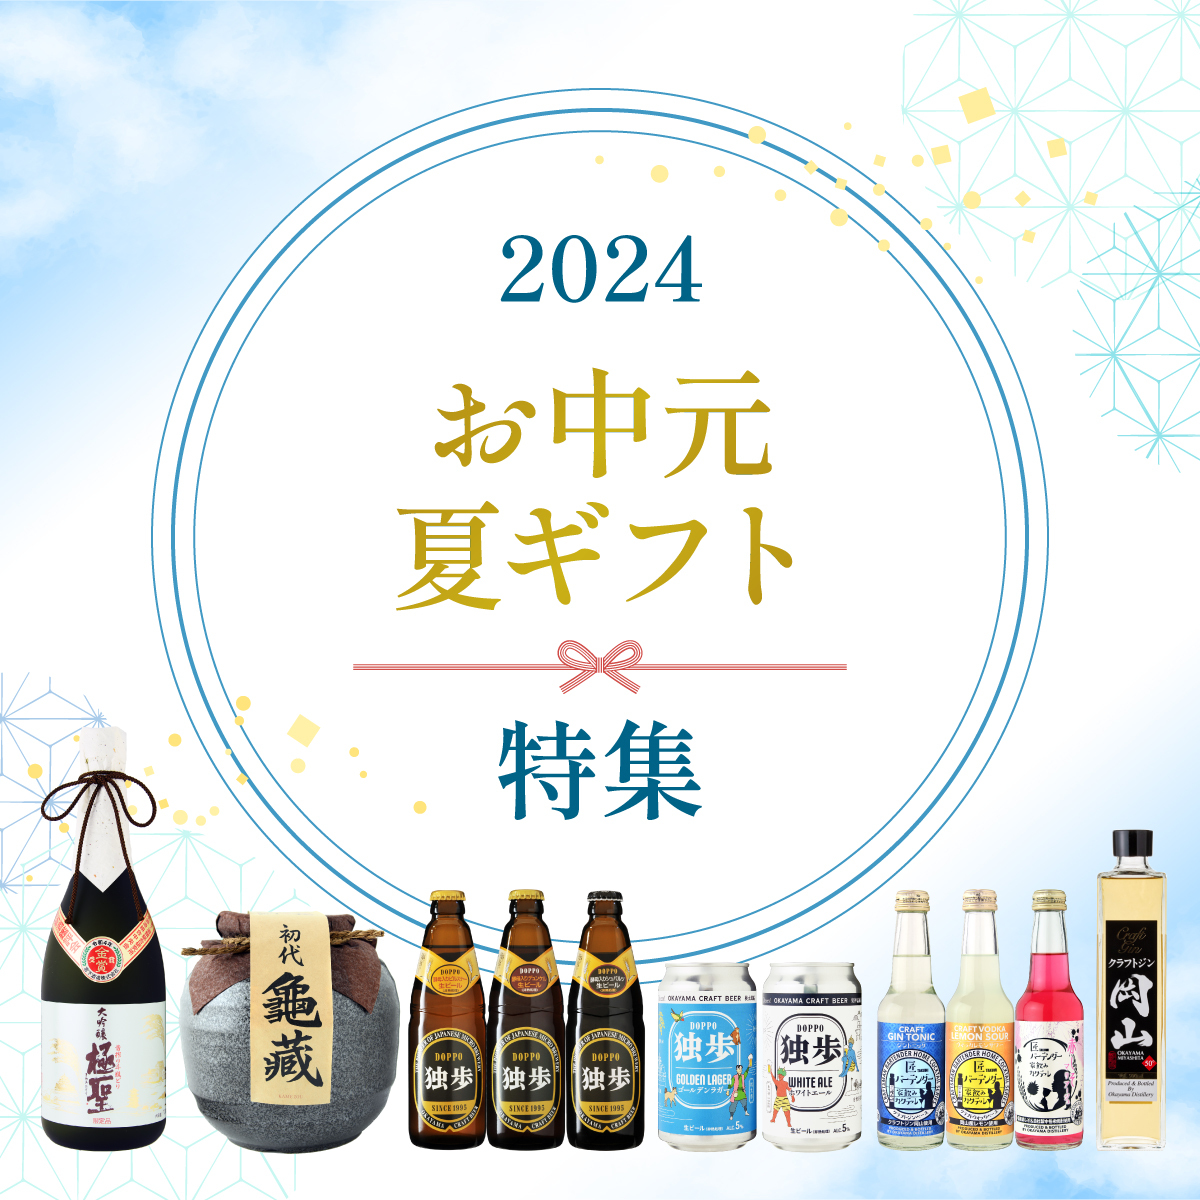 お中元ギフトで地酒・日本酒、地ビール、本格焼酎、梅酒、クラフトジンを贈ろう